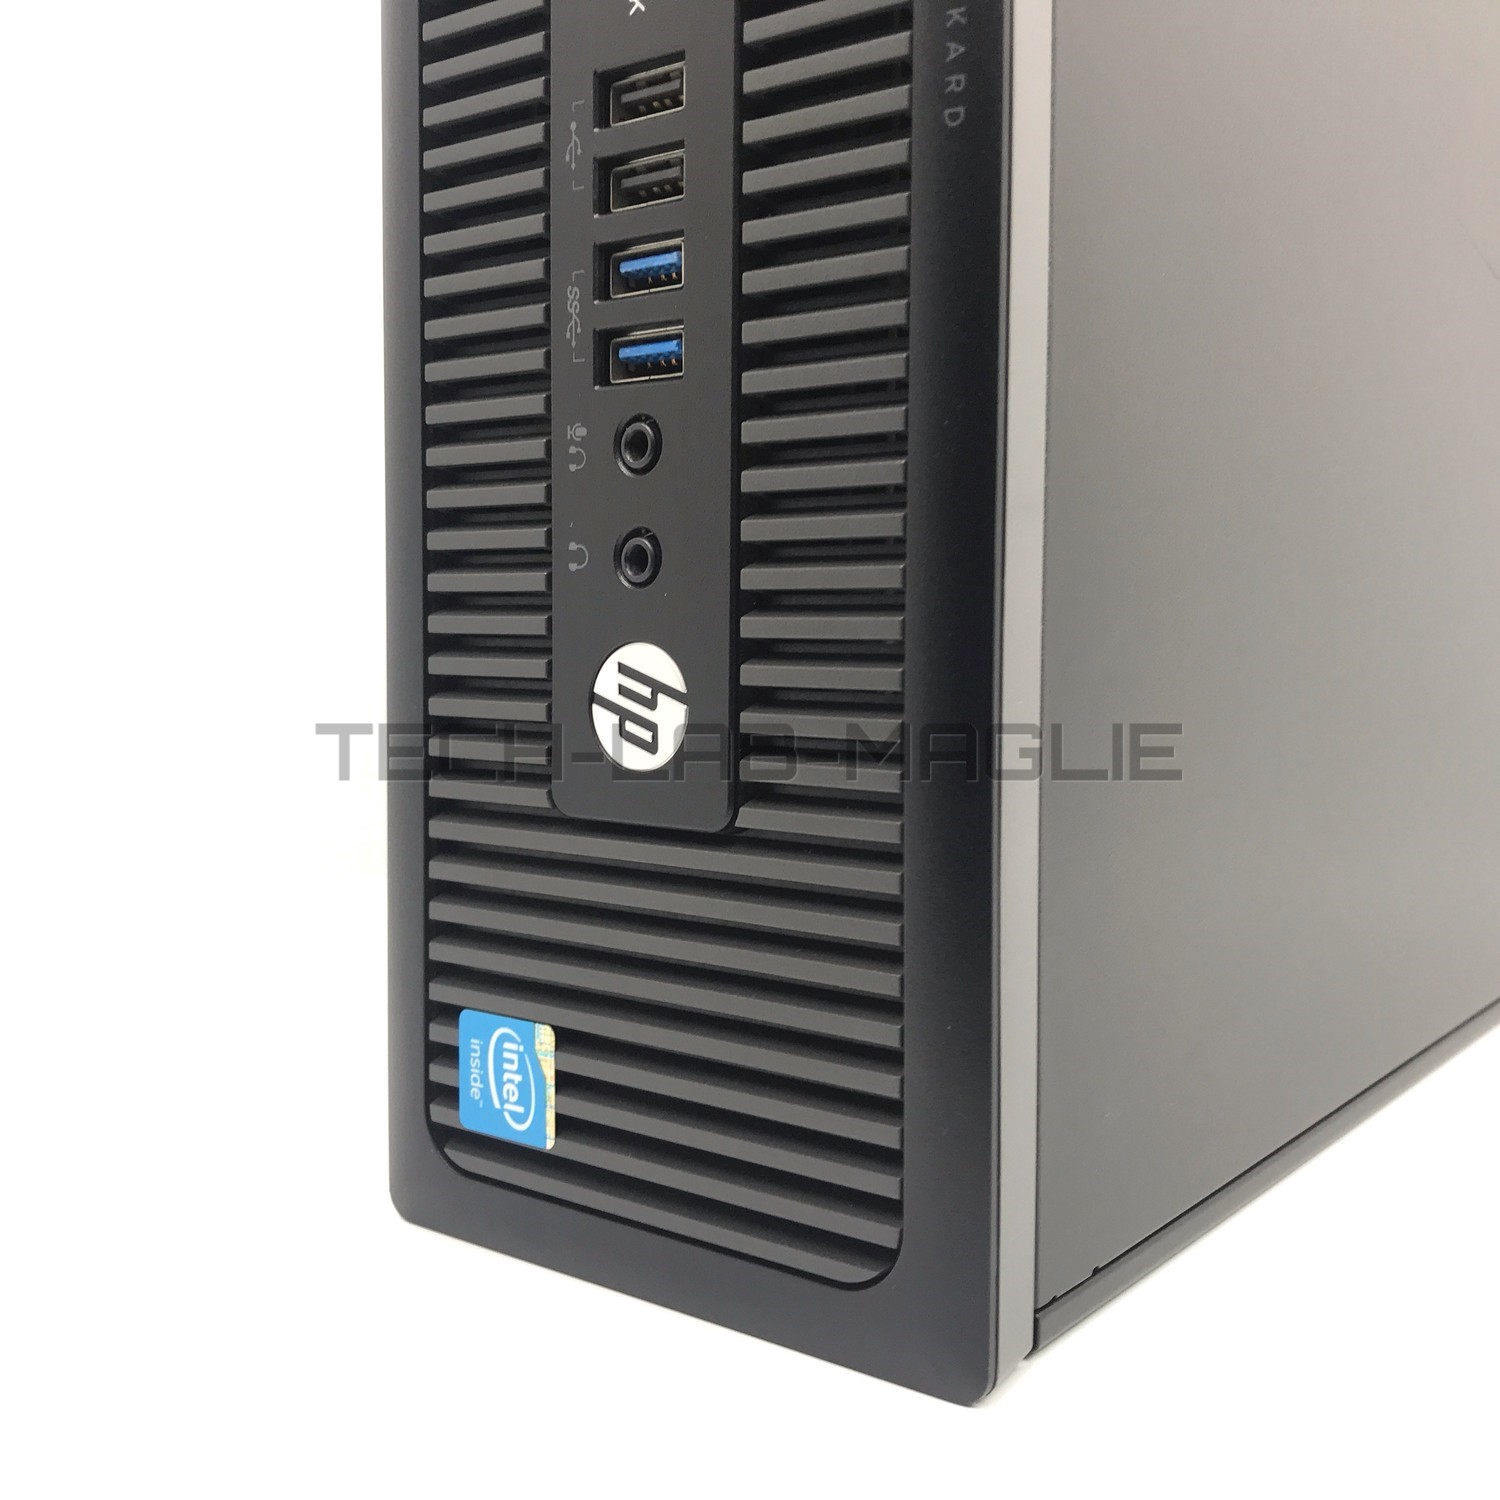 COMPUTER RICONDIZIONATO HP PRODESK 600 G1840 2,8GHZ 4GB RAM 250GB HDD WIN 10